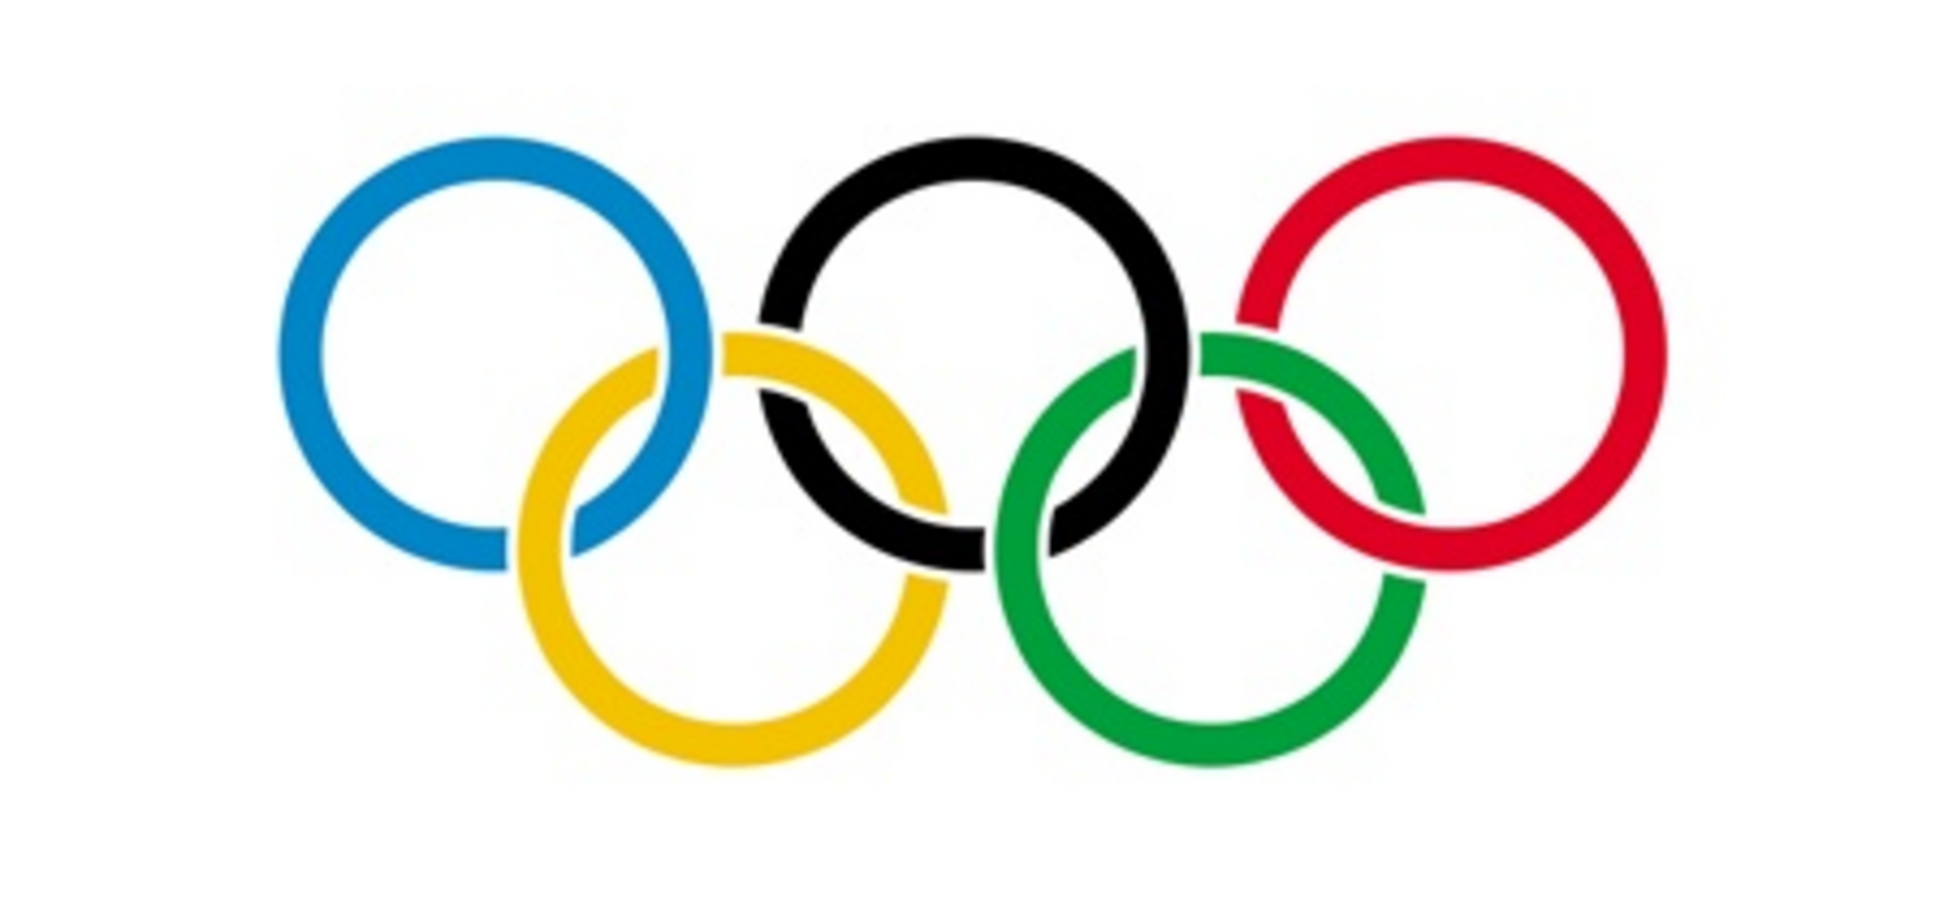 По версии The Guardian Украина на Олимпиаде заняла 6 место